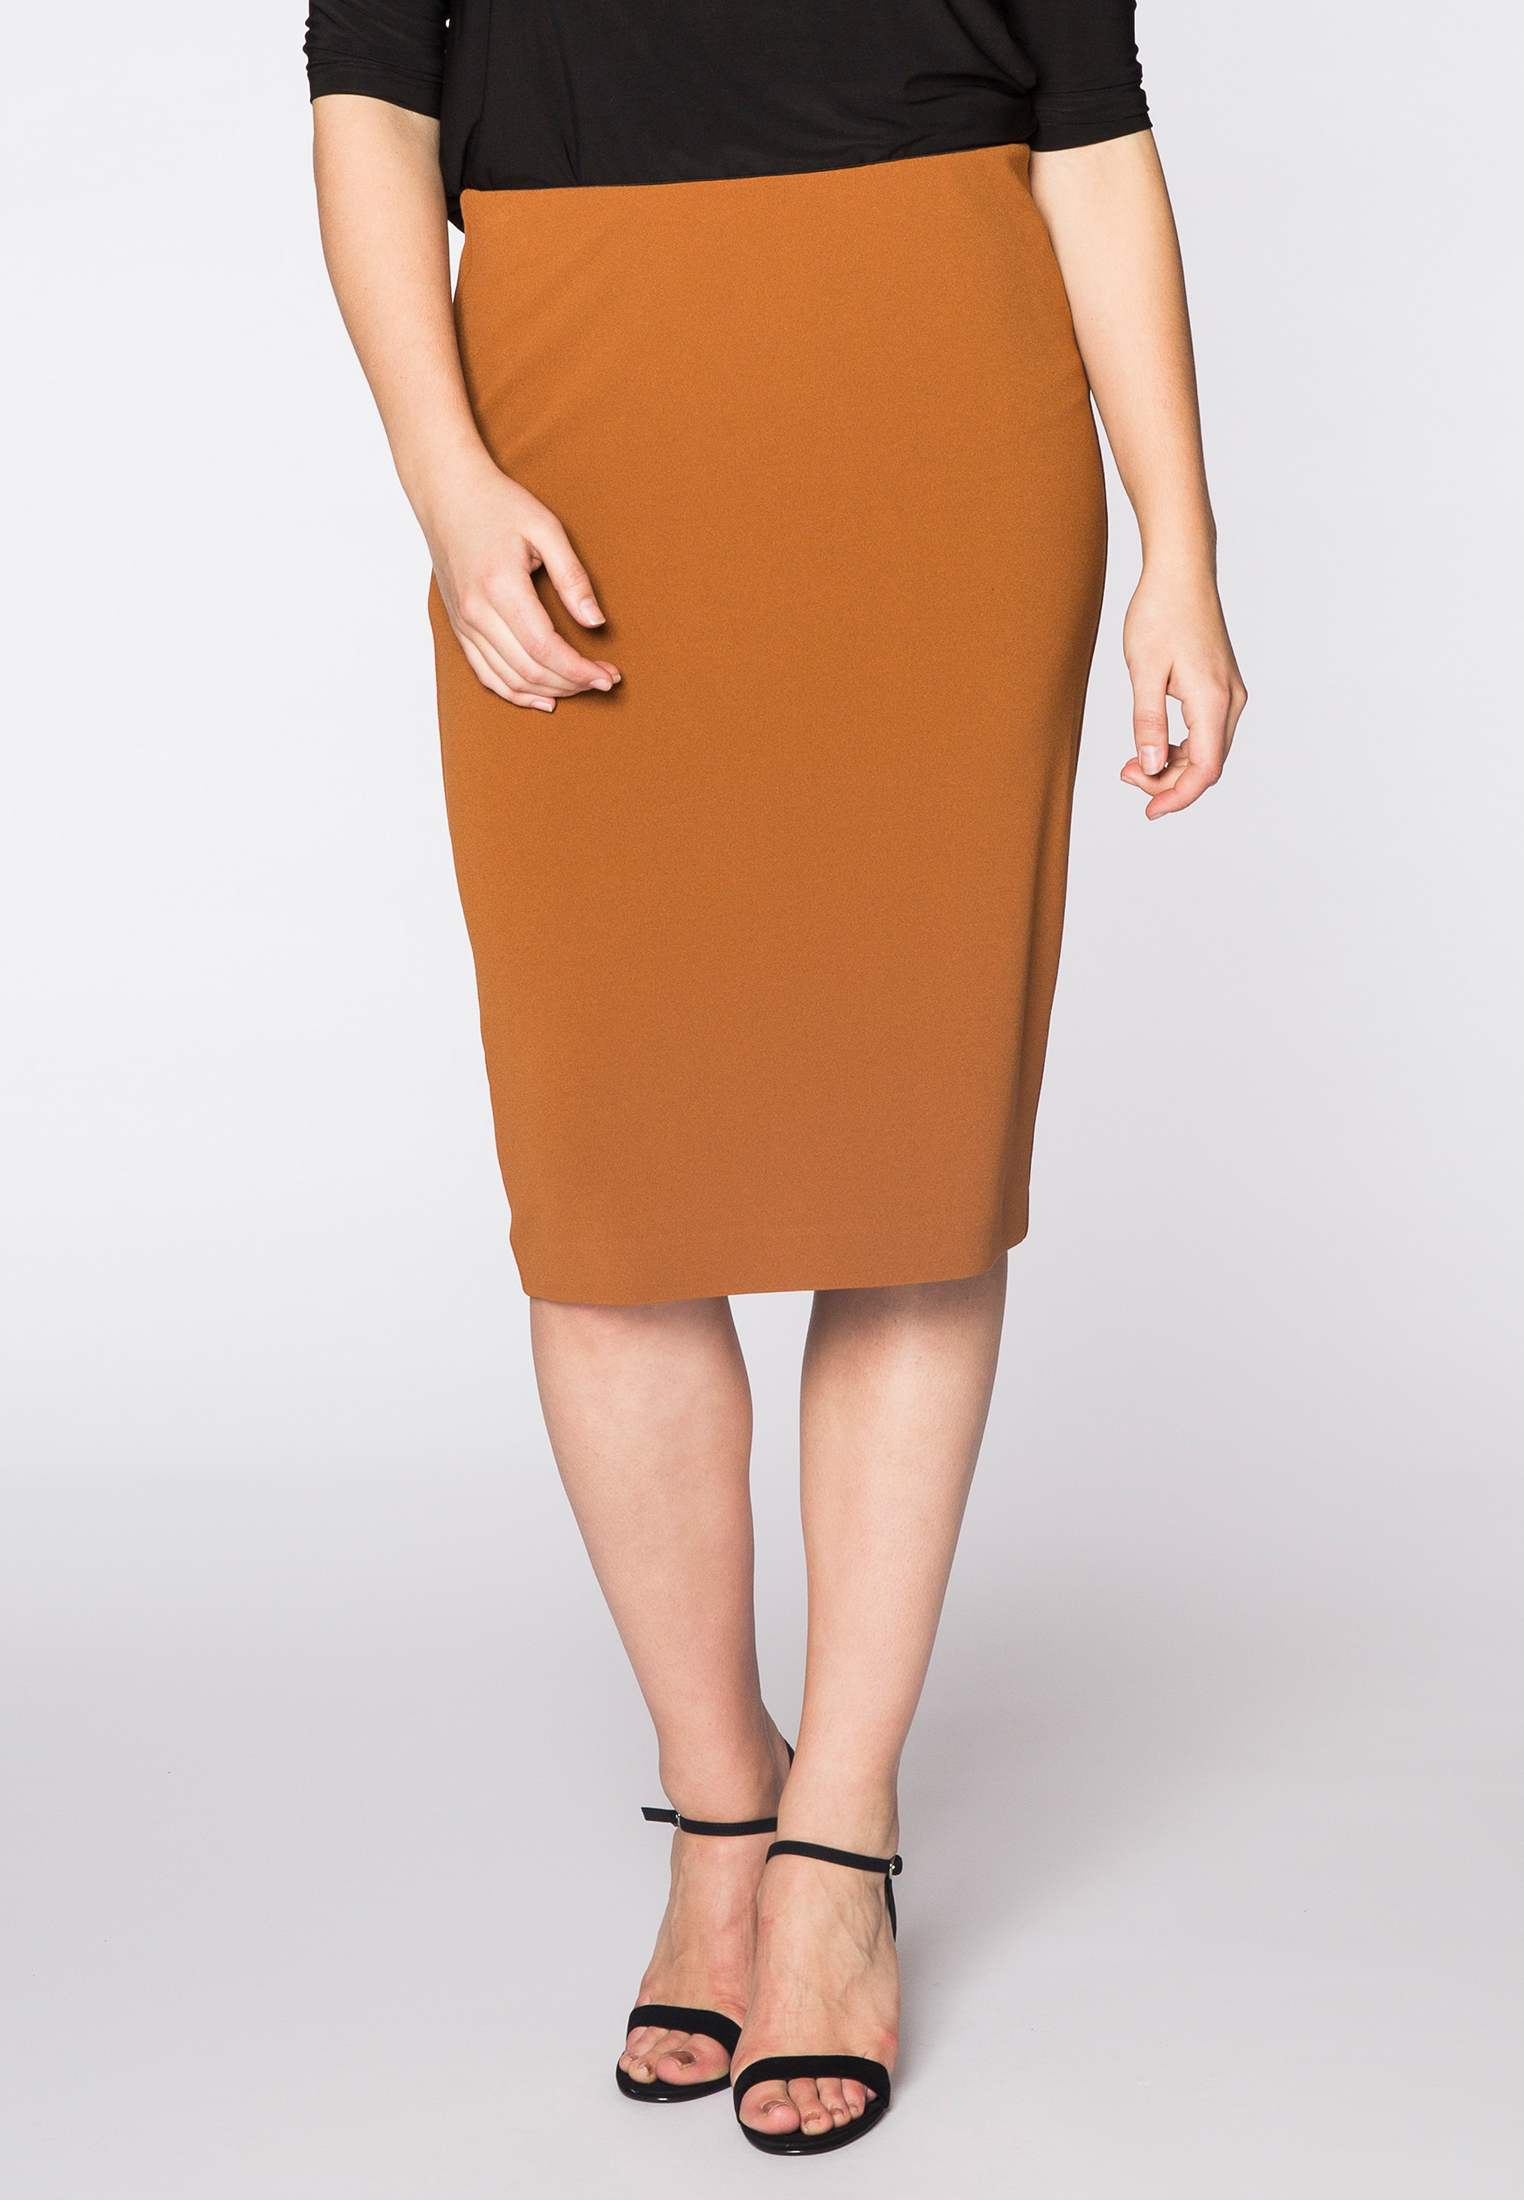 Skirt zip midback cr?pe 58/60 brown